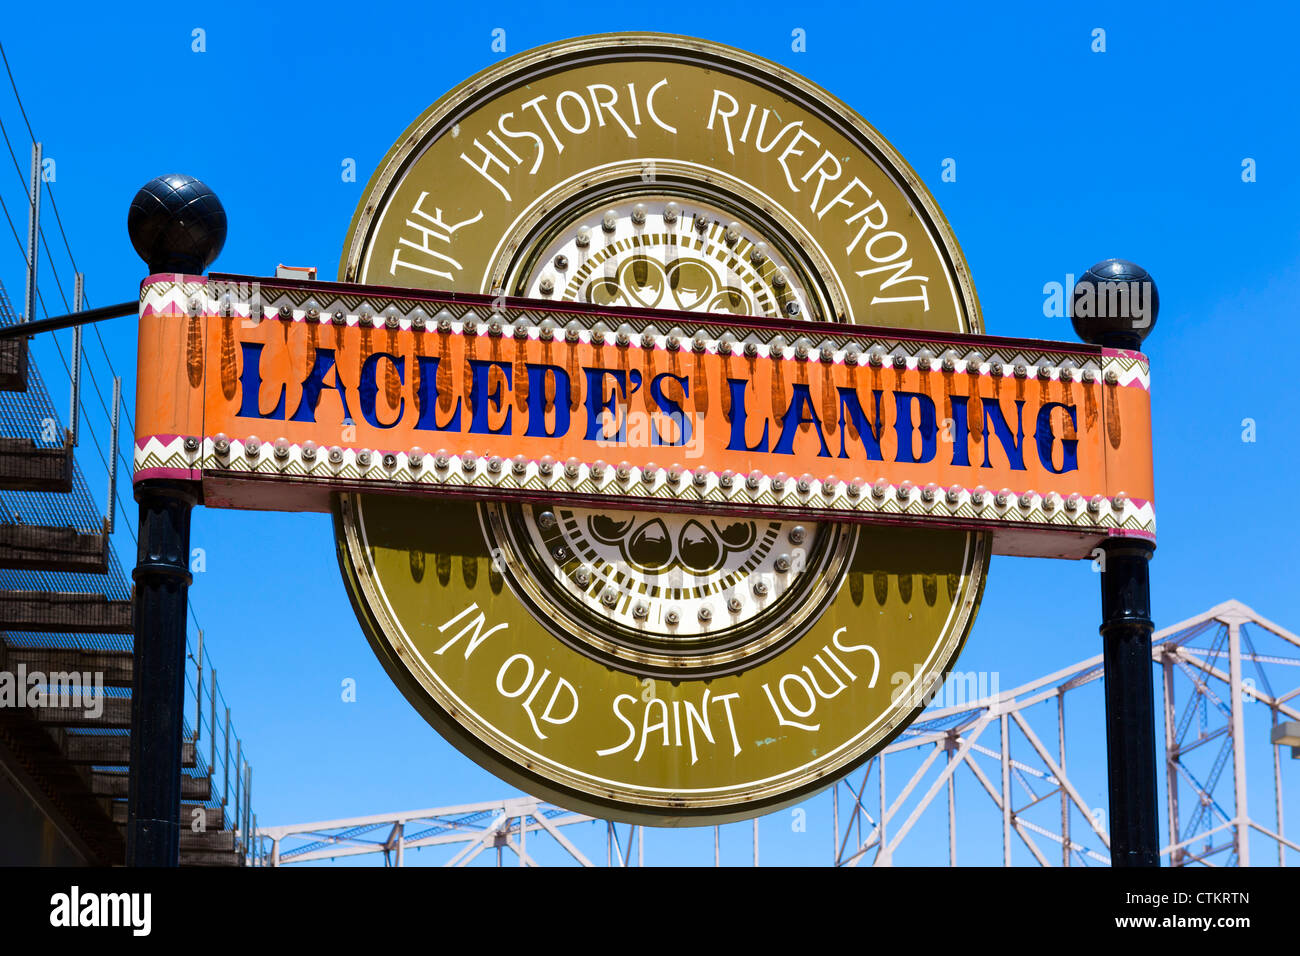 Signo de Laclede's Landing en el histórico río, St Louis, Missouri, EE.UU. Foto de stock